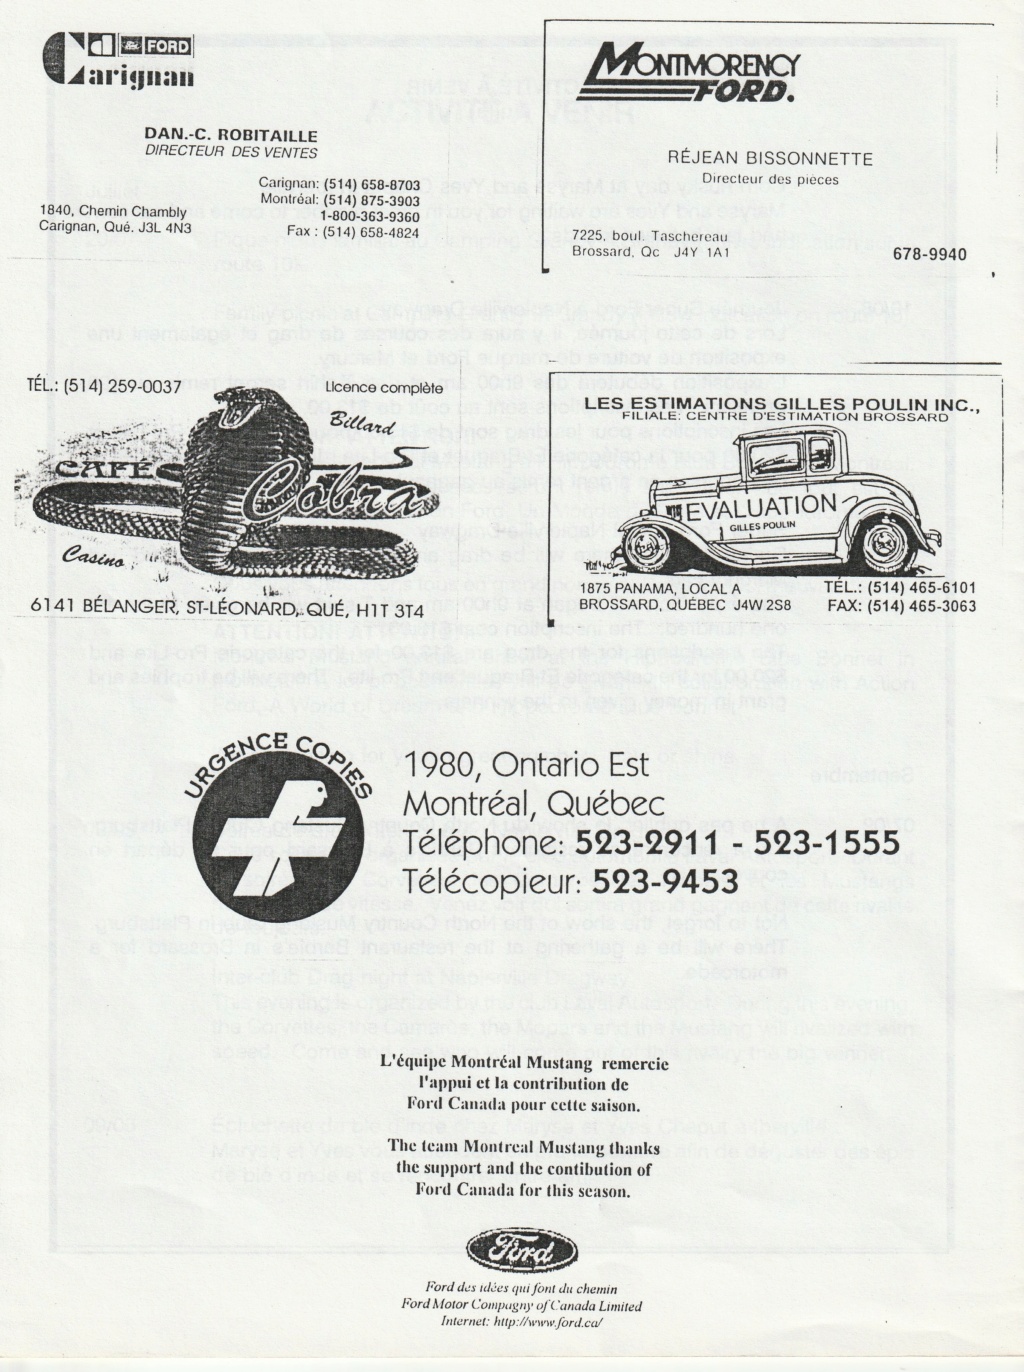 Montréal Mustang dans le temps! 1981 à aujourd'hui (Histoire en photos) - Page 8 Img_2452